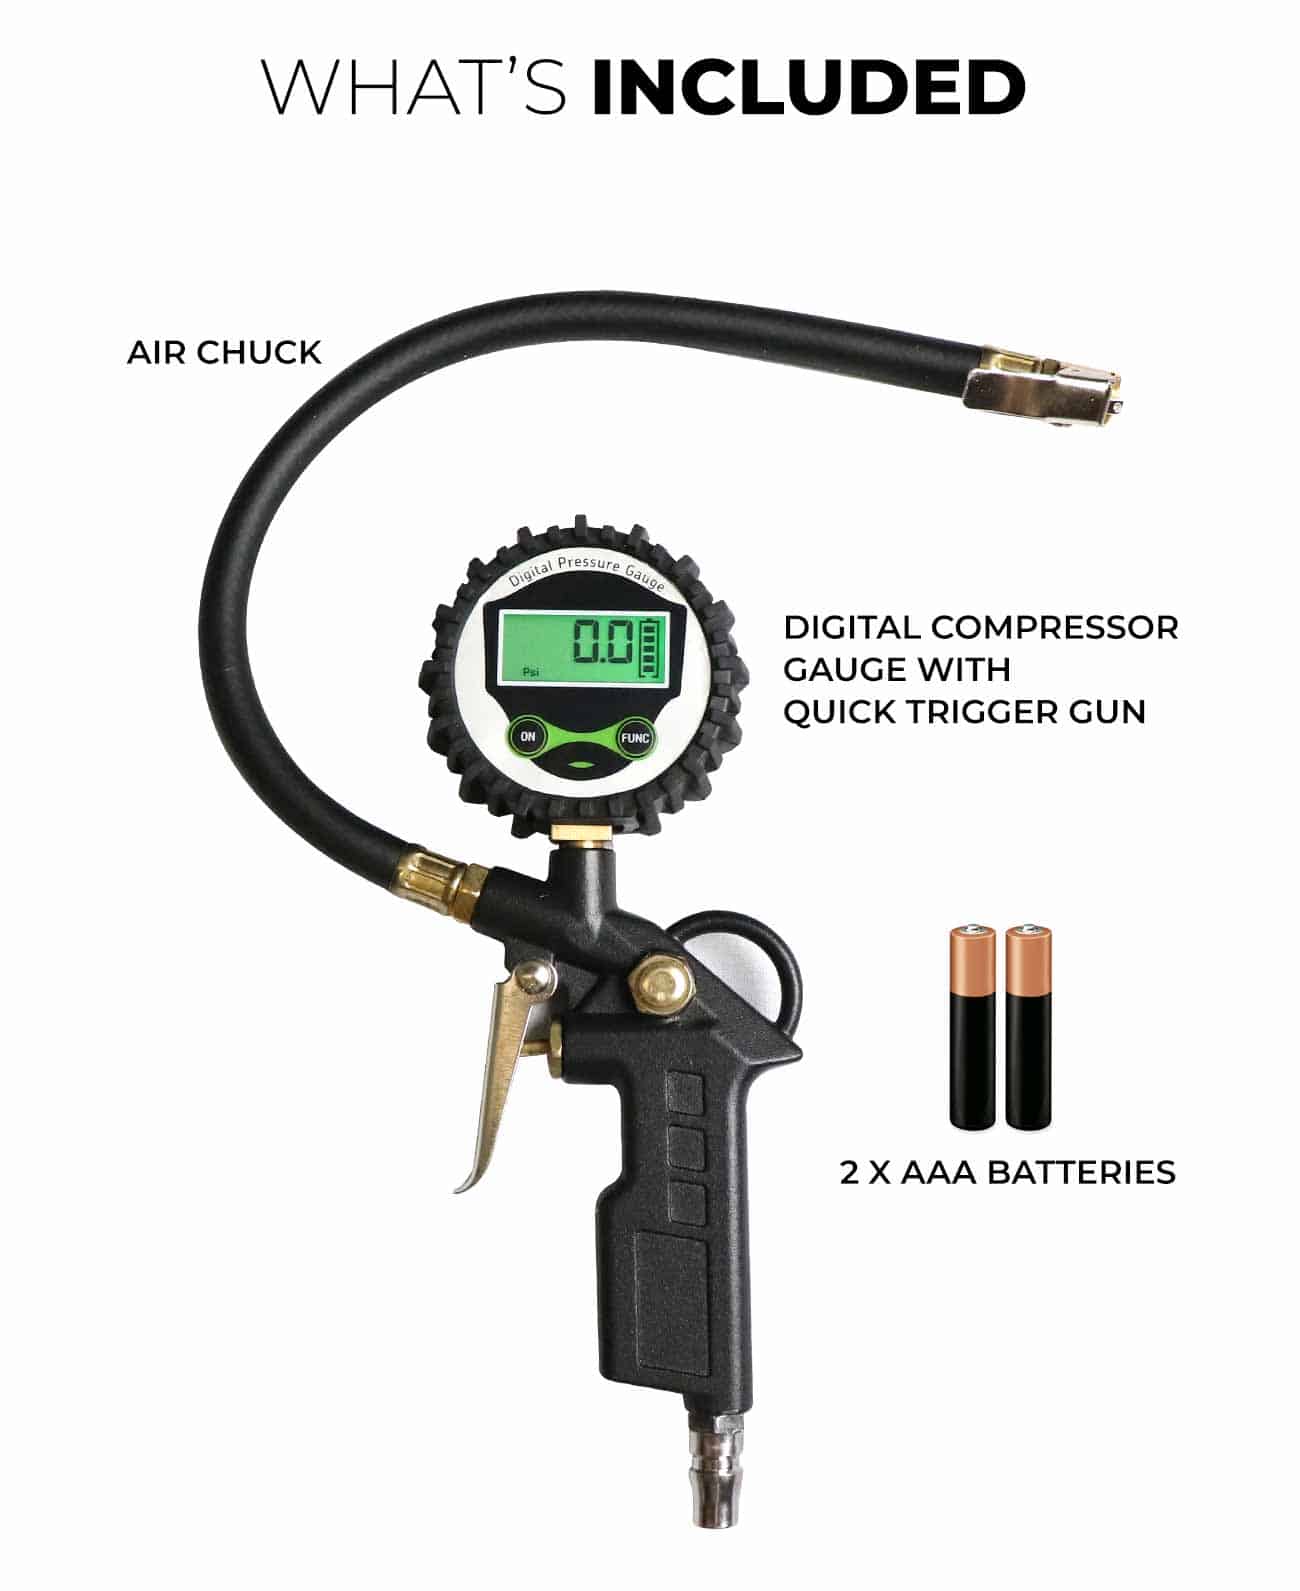 Digital Compressor Gauge with Trigger Gun